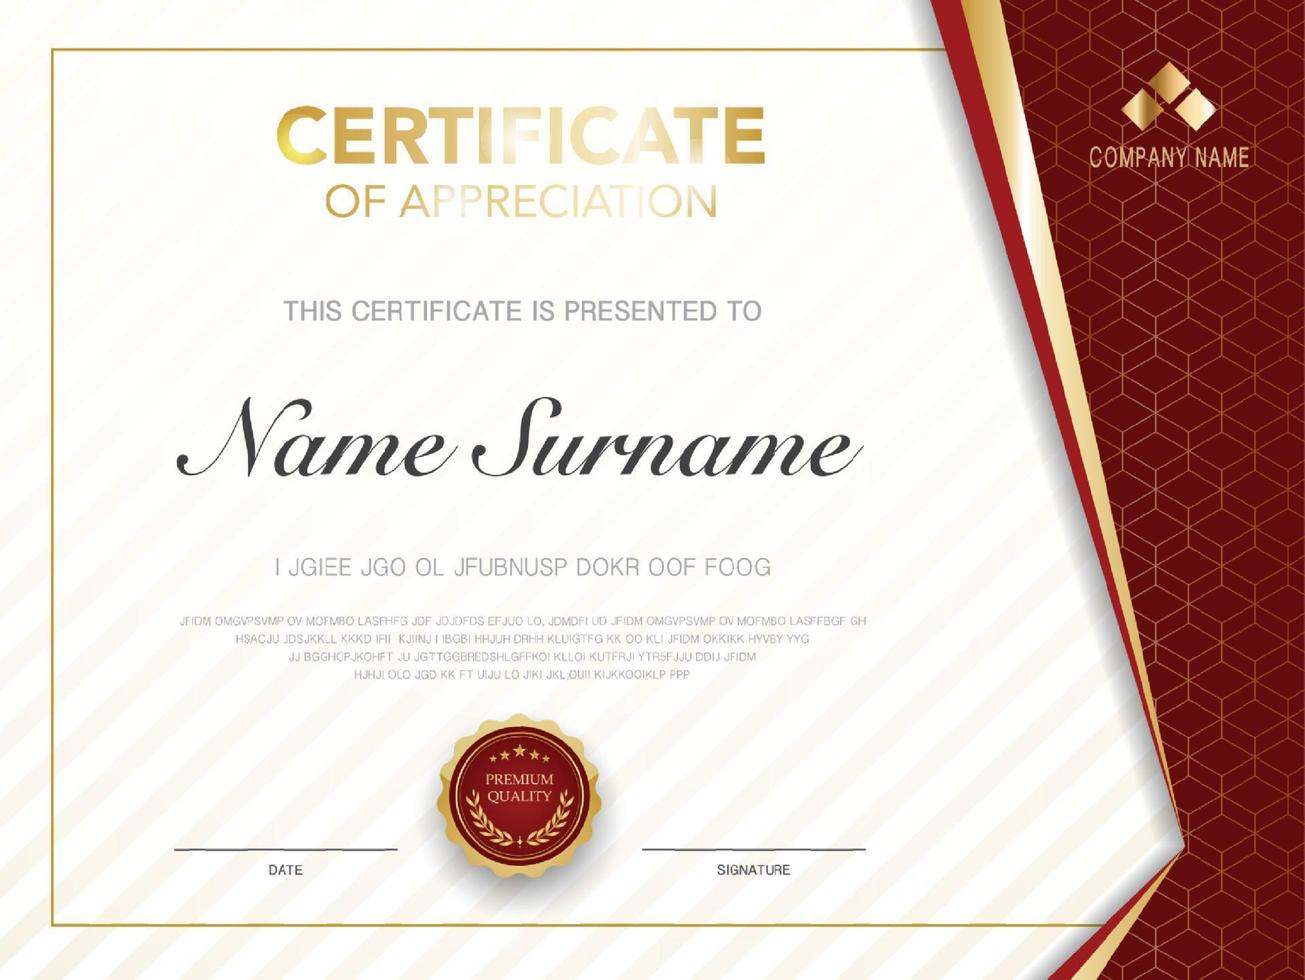 modelo de certificado de diploma de cor vermelha e dourada com imagem vetorial de estilo moderno e luxuoso, adequado para apreciação. ilustração vetorial vetor